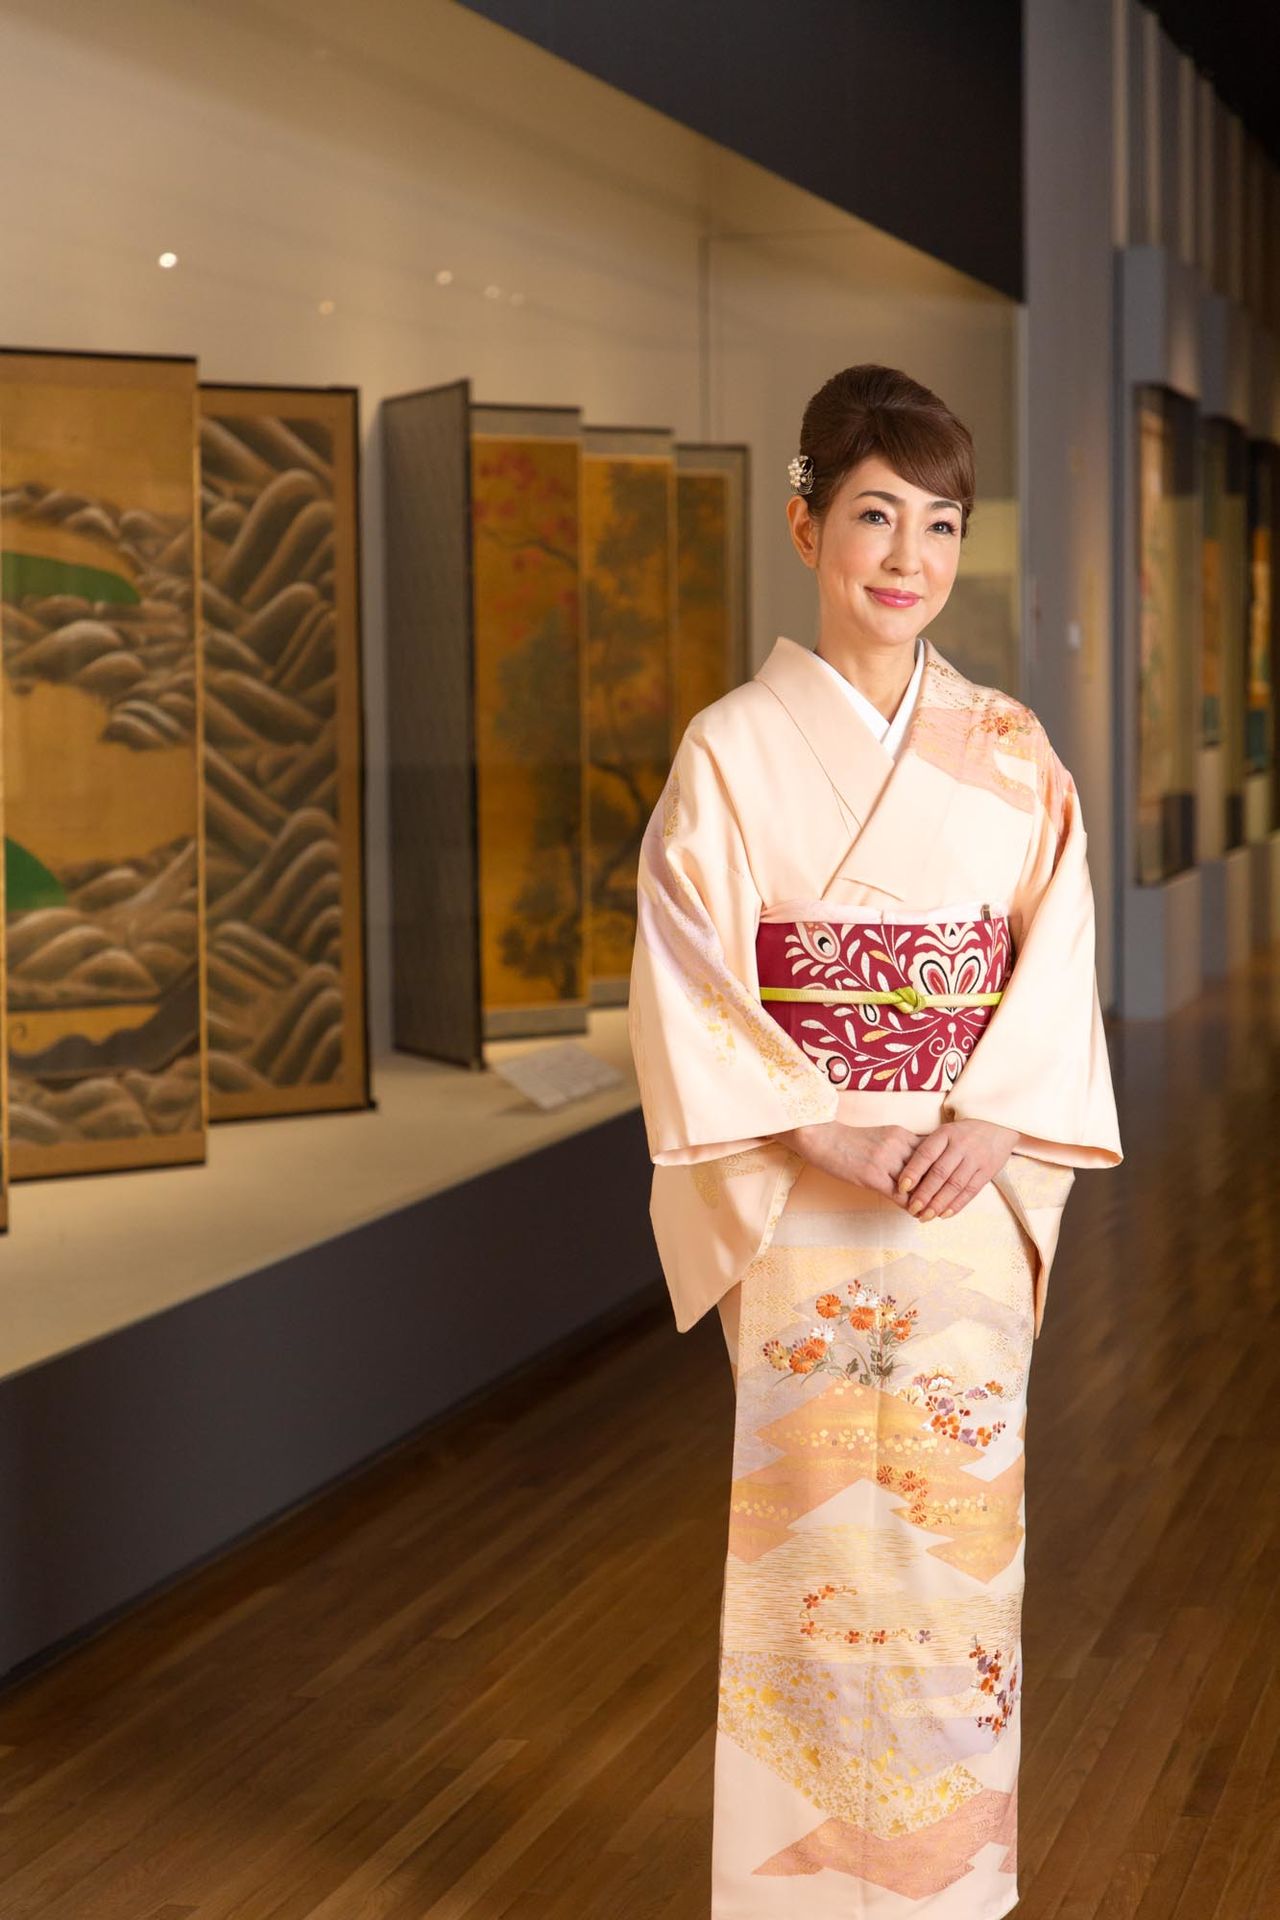 Yamazaki often wears a kimono in public settings. 